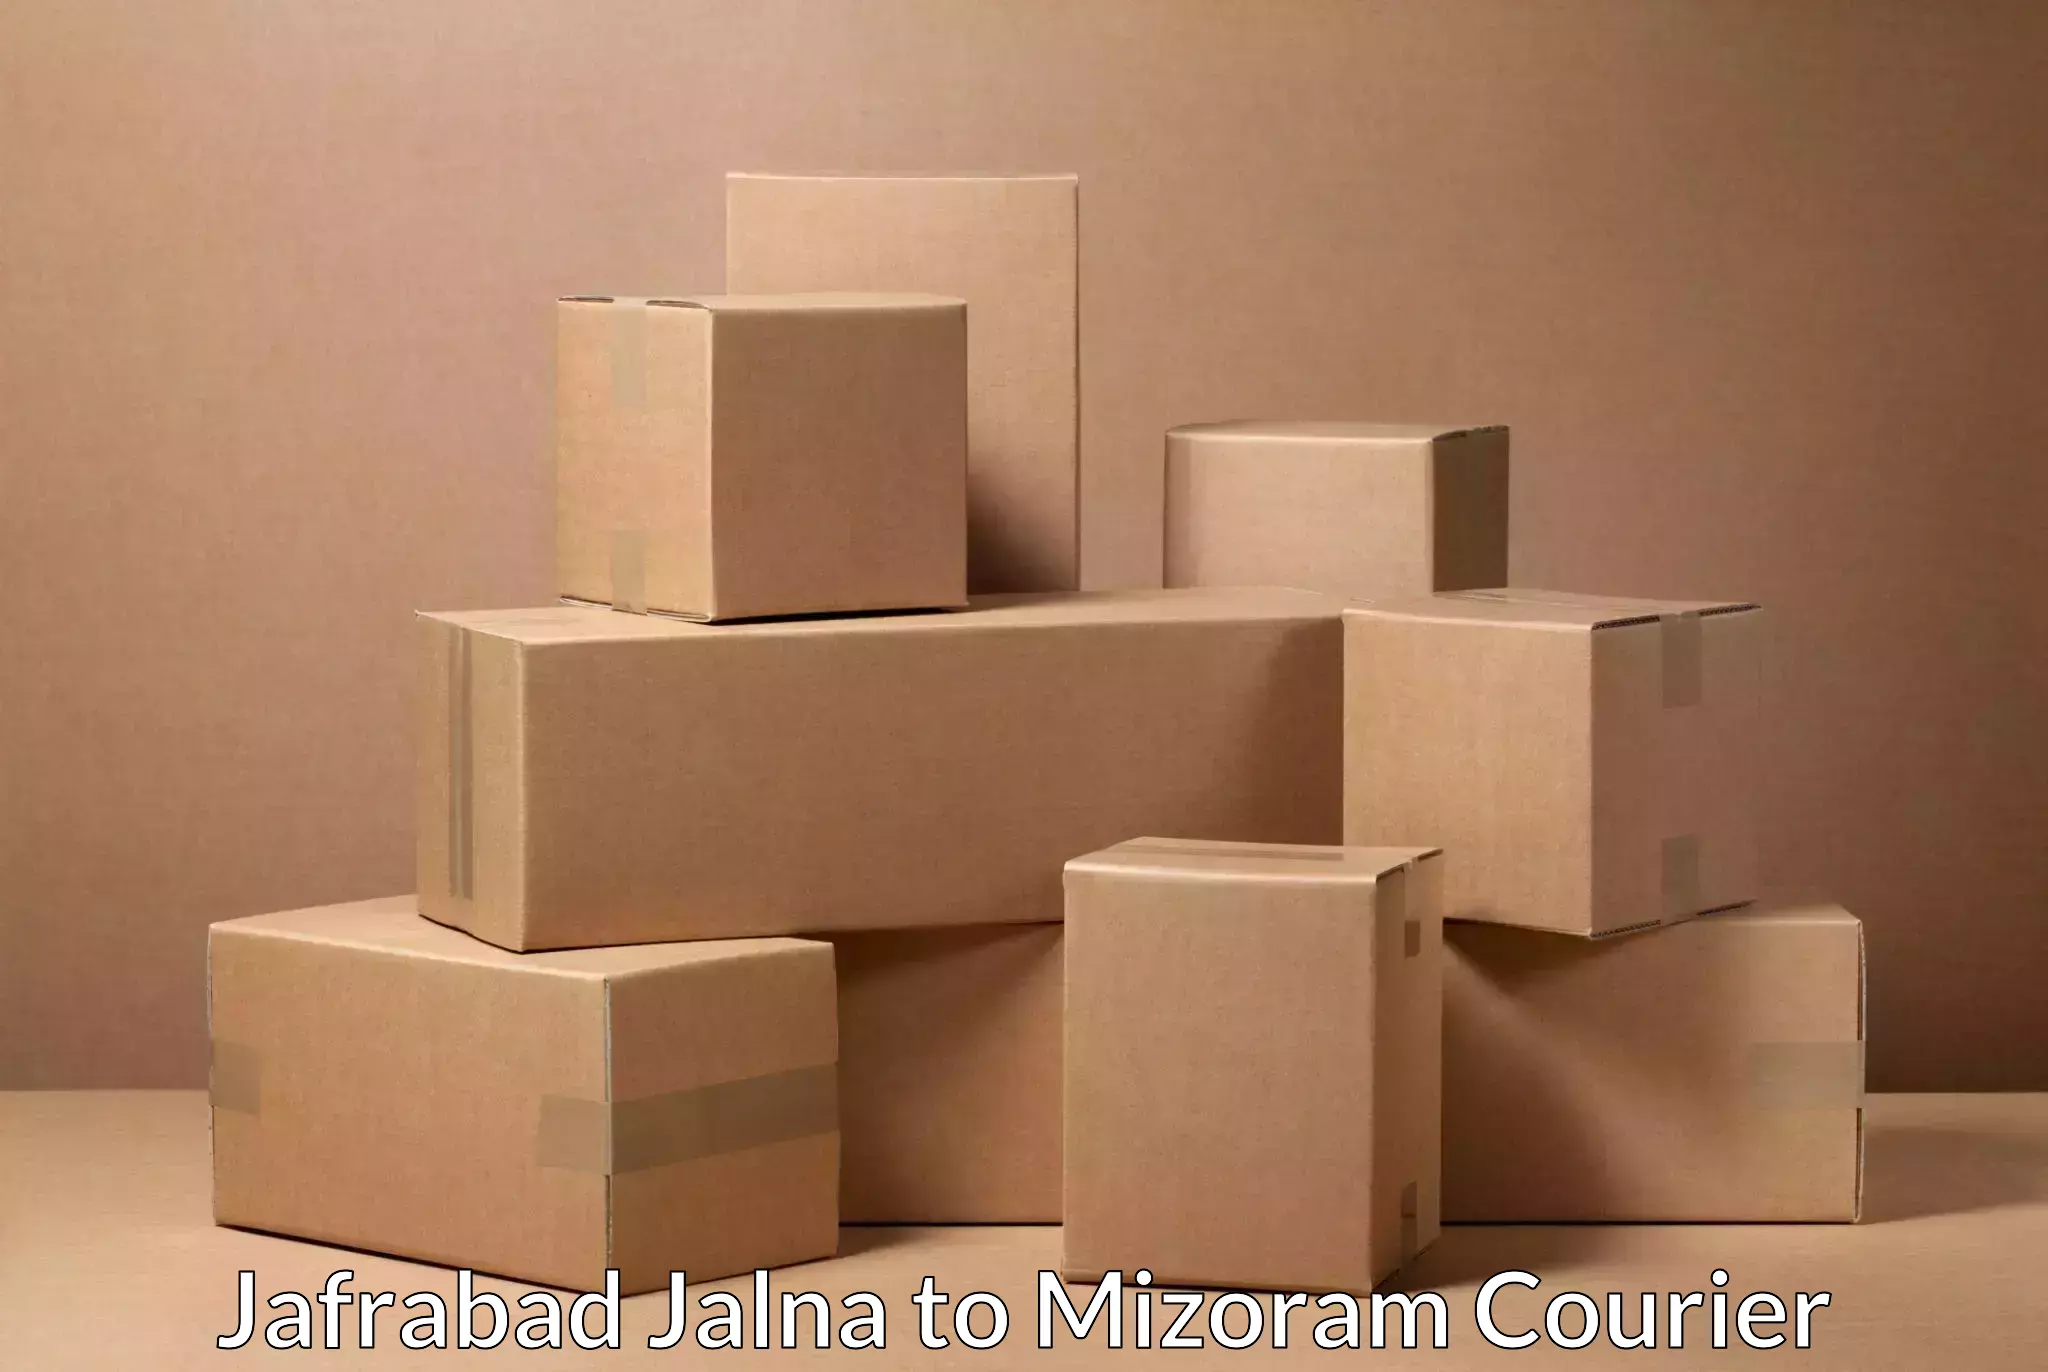 High value parcel delivery Jafrabad Jalna to Mizoram